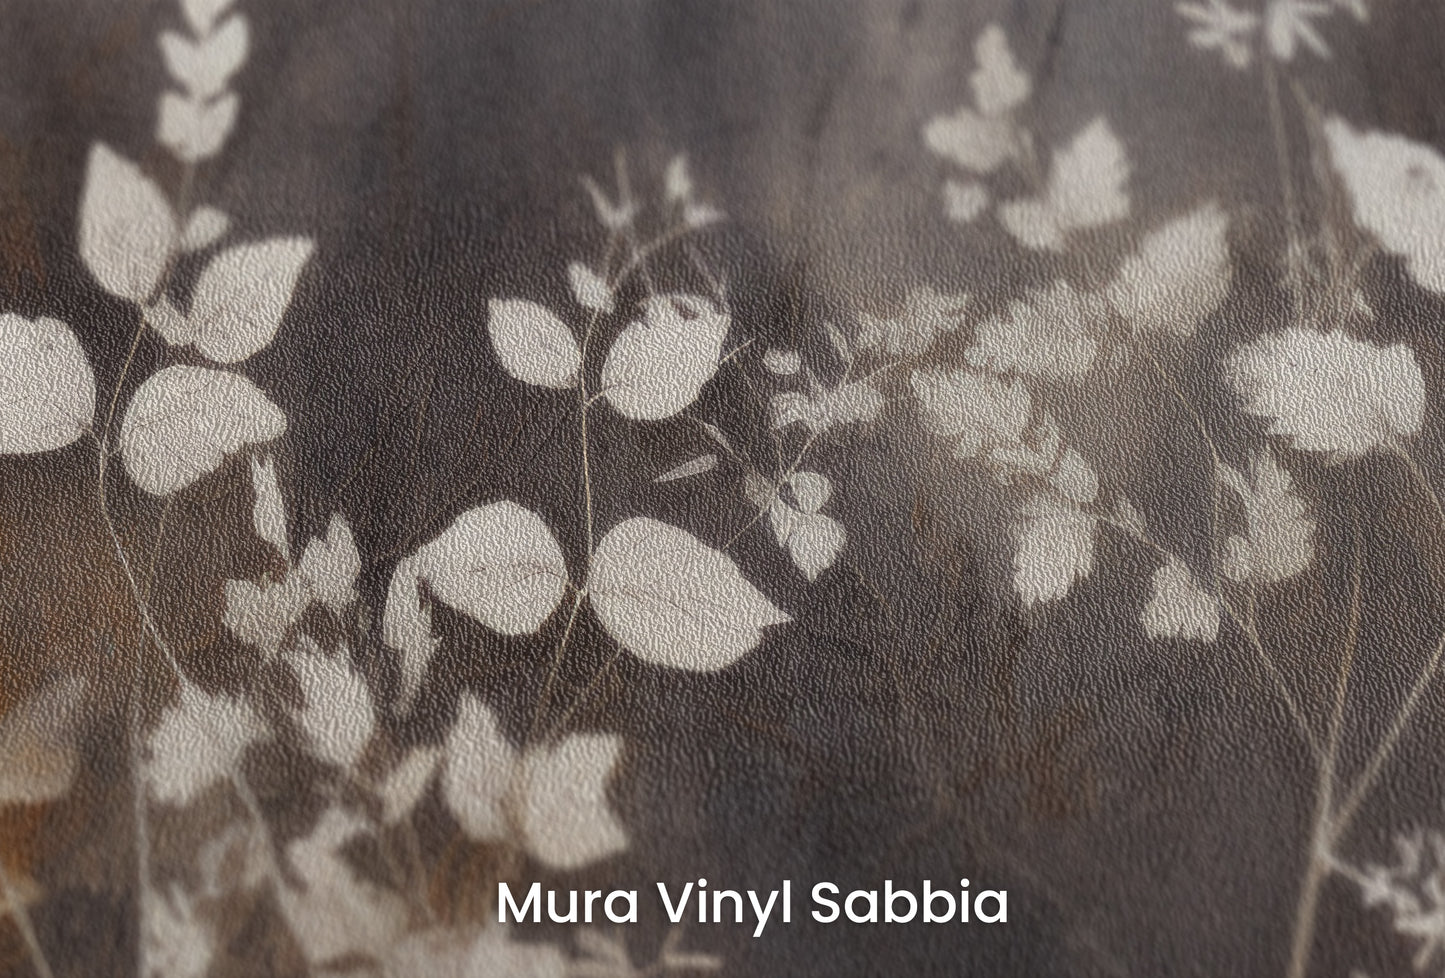 Zbliżenie na artystyczną fototapetę o nazwie Misty Floral Contrast na podłożu Mura Vinyl Sabbia struktura grubego ziarna piasku.